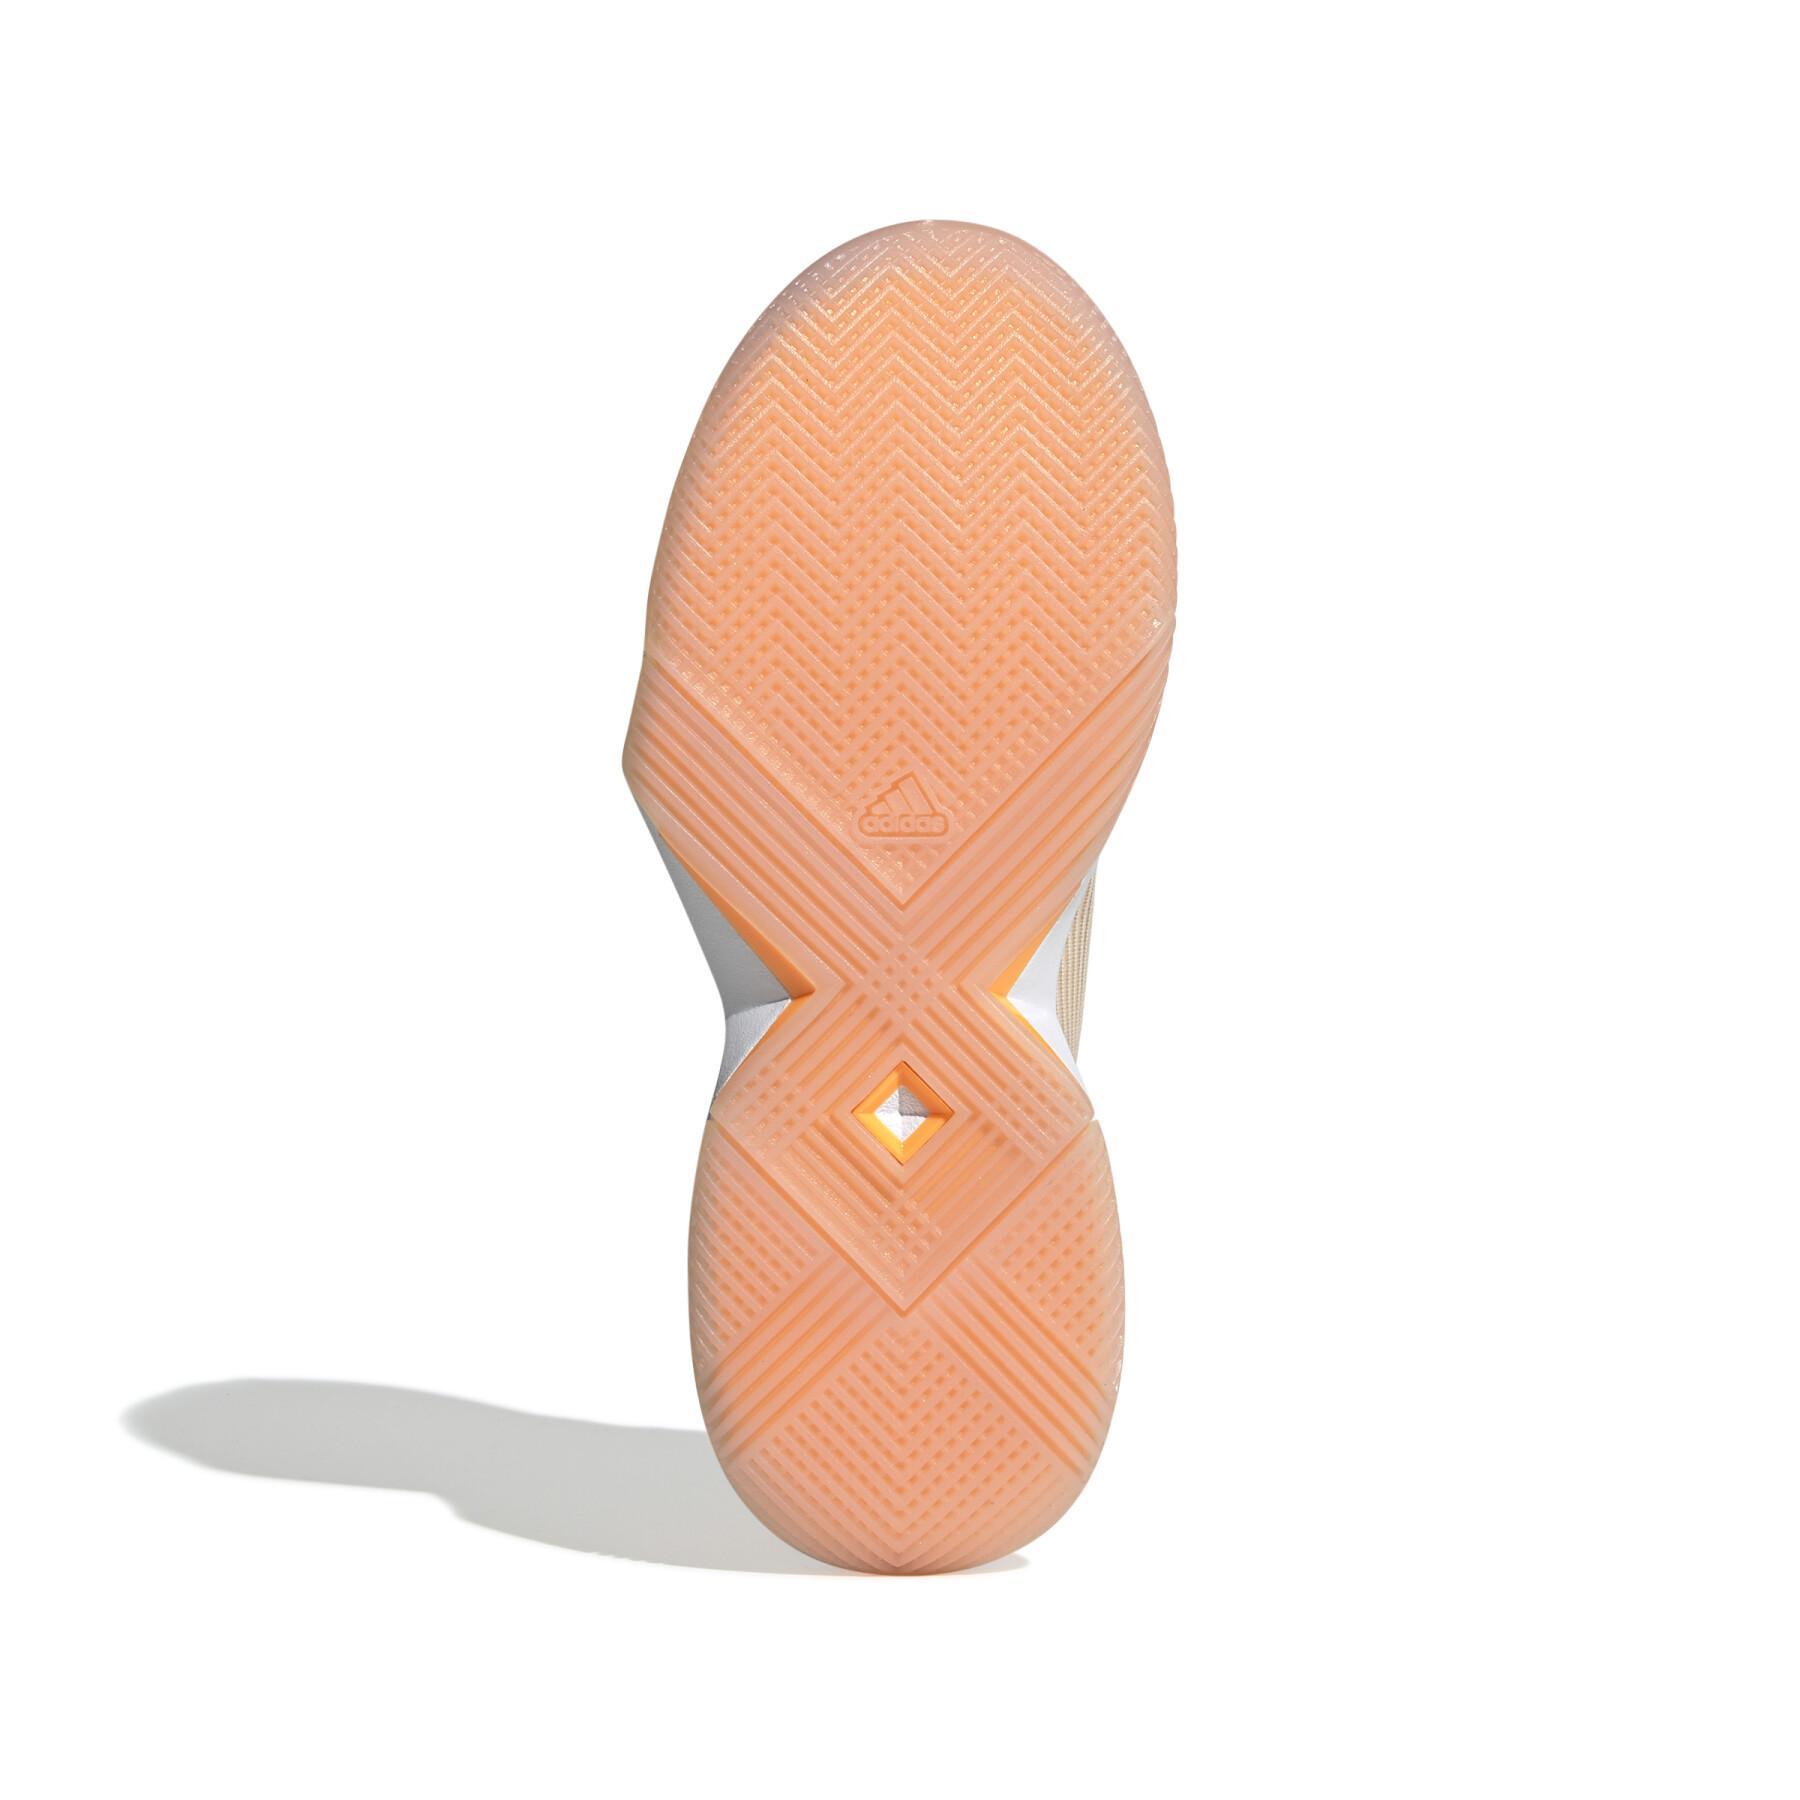 Zapatillas de deporte para mujeres adidas Adizero Ubersonic 3